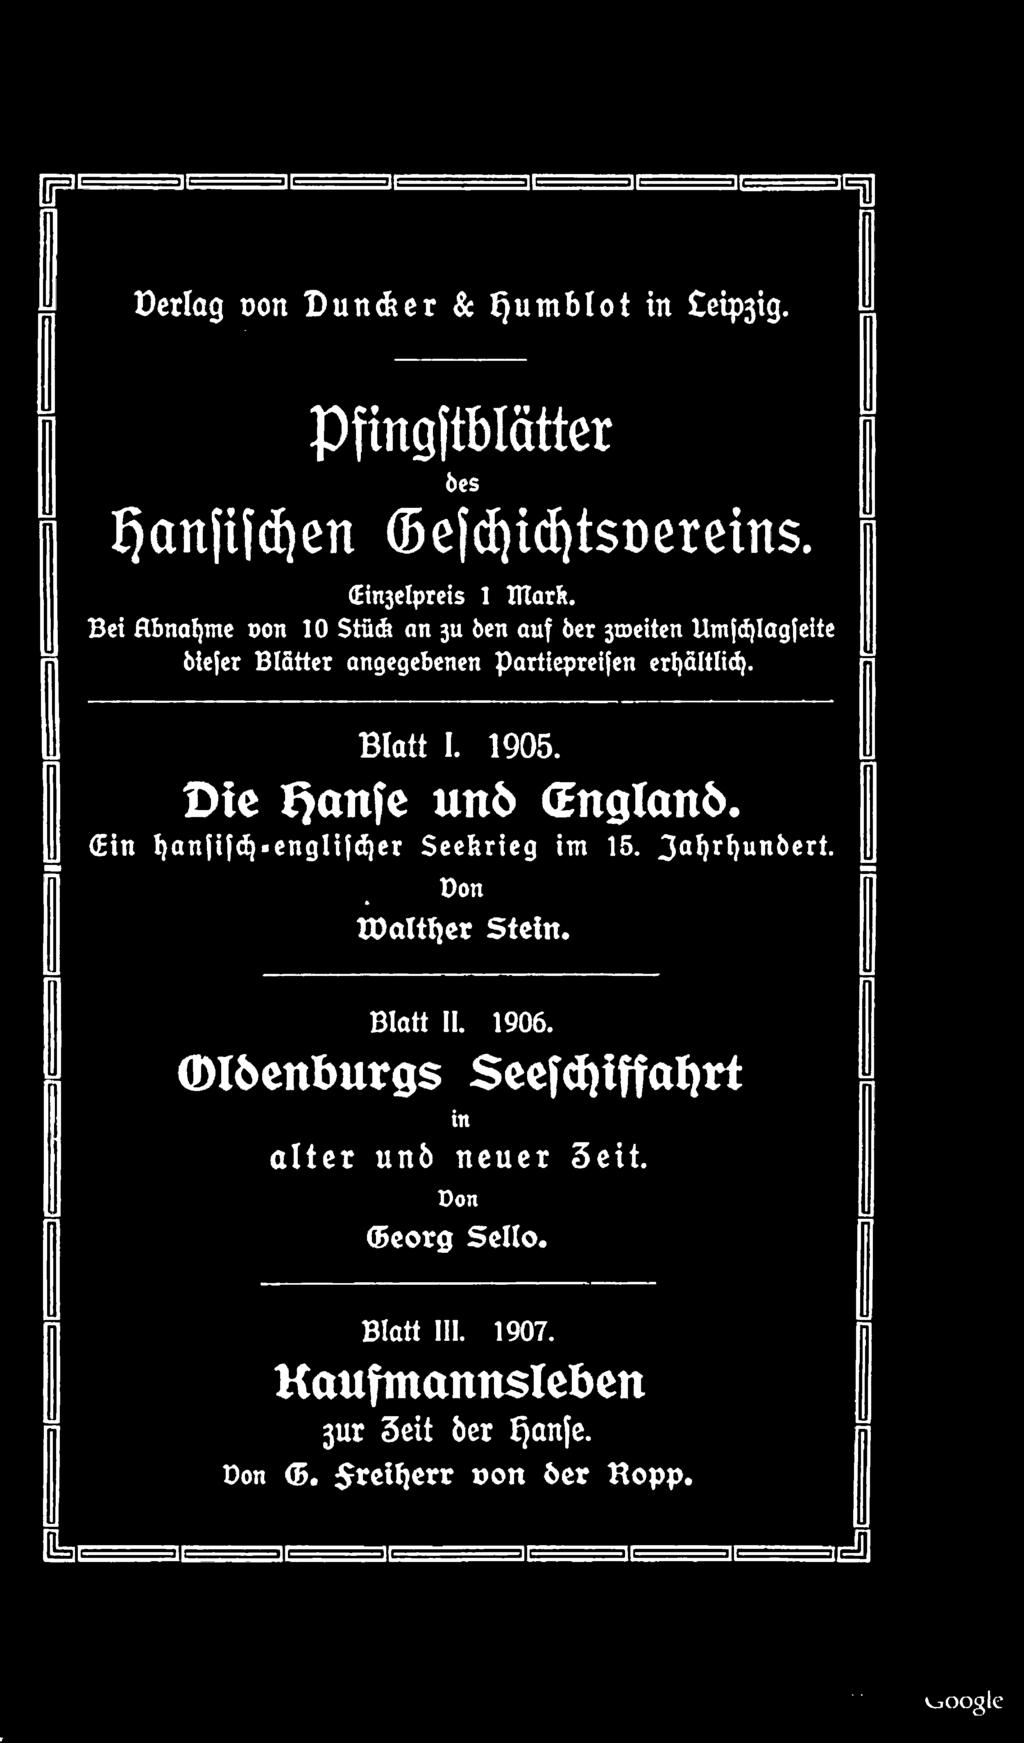 1905. Die Qanfe un6 Cnglanö. (Ein I)an ija^-englt c^er Seekrieg im 15. 3 M a un &* r *- Don tdalttjer Stein. Blatt II. 1906.